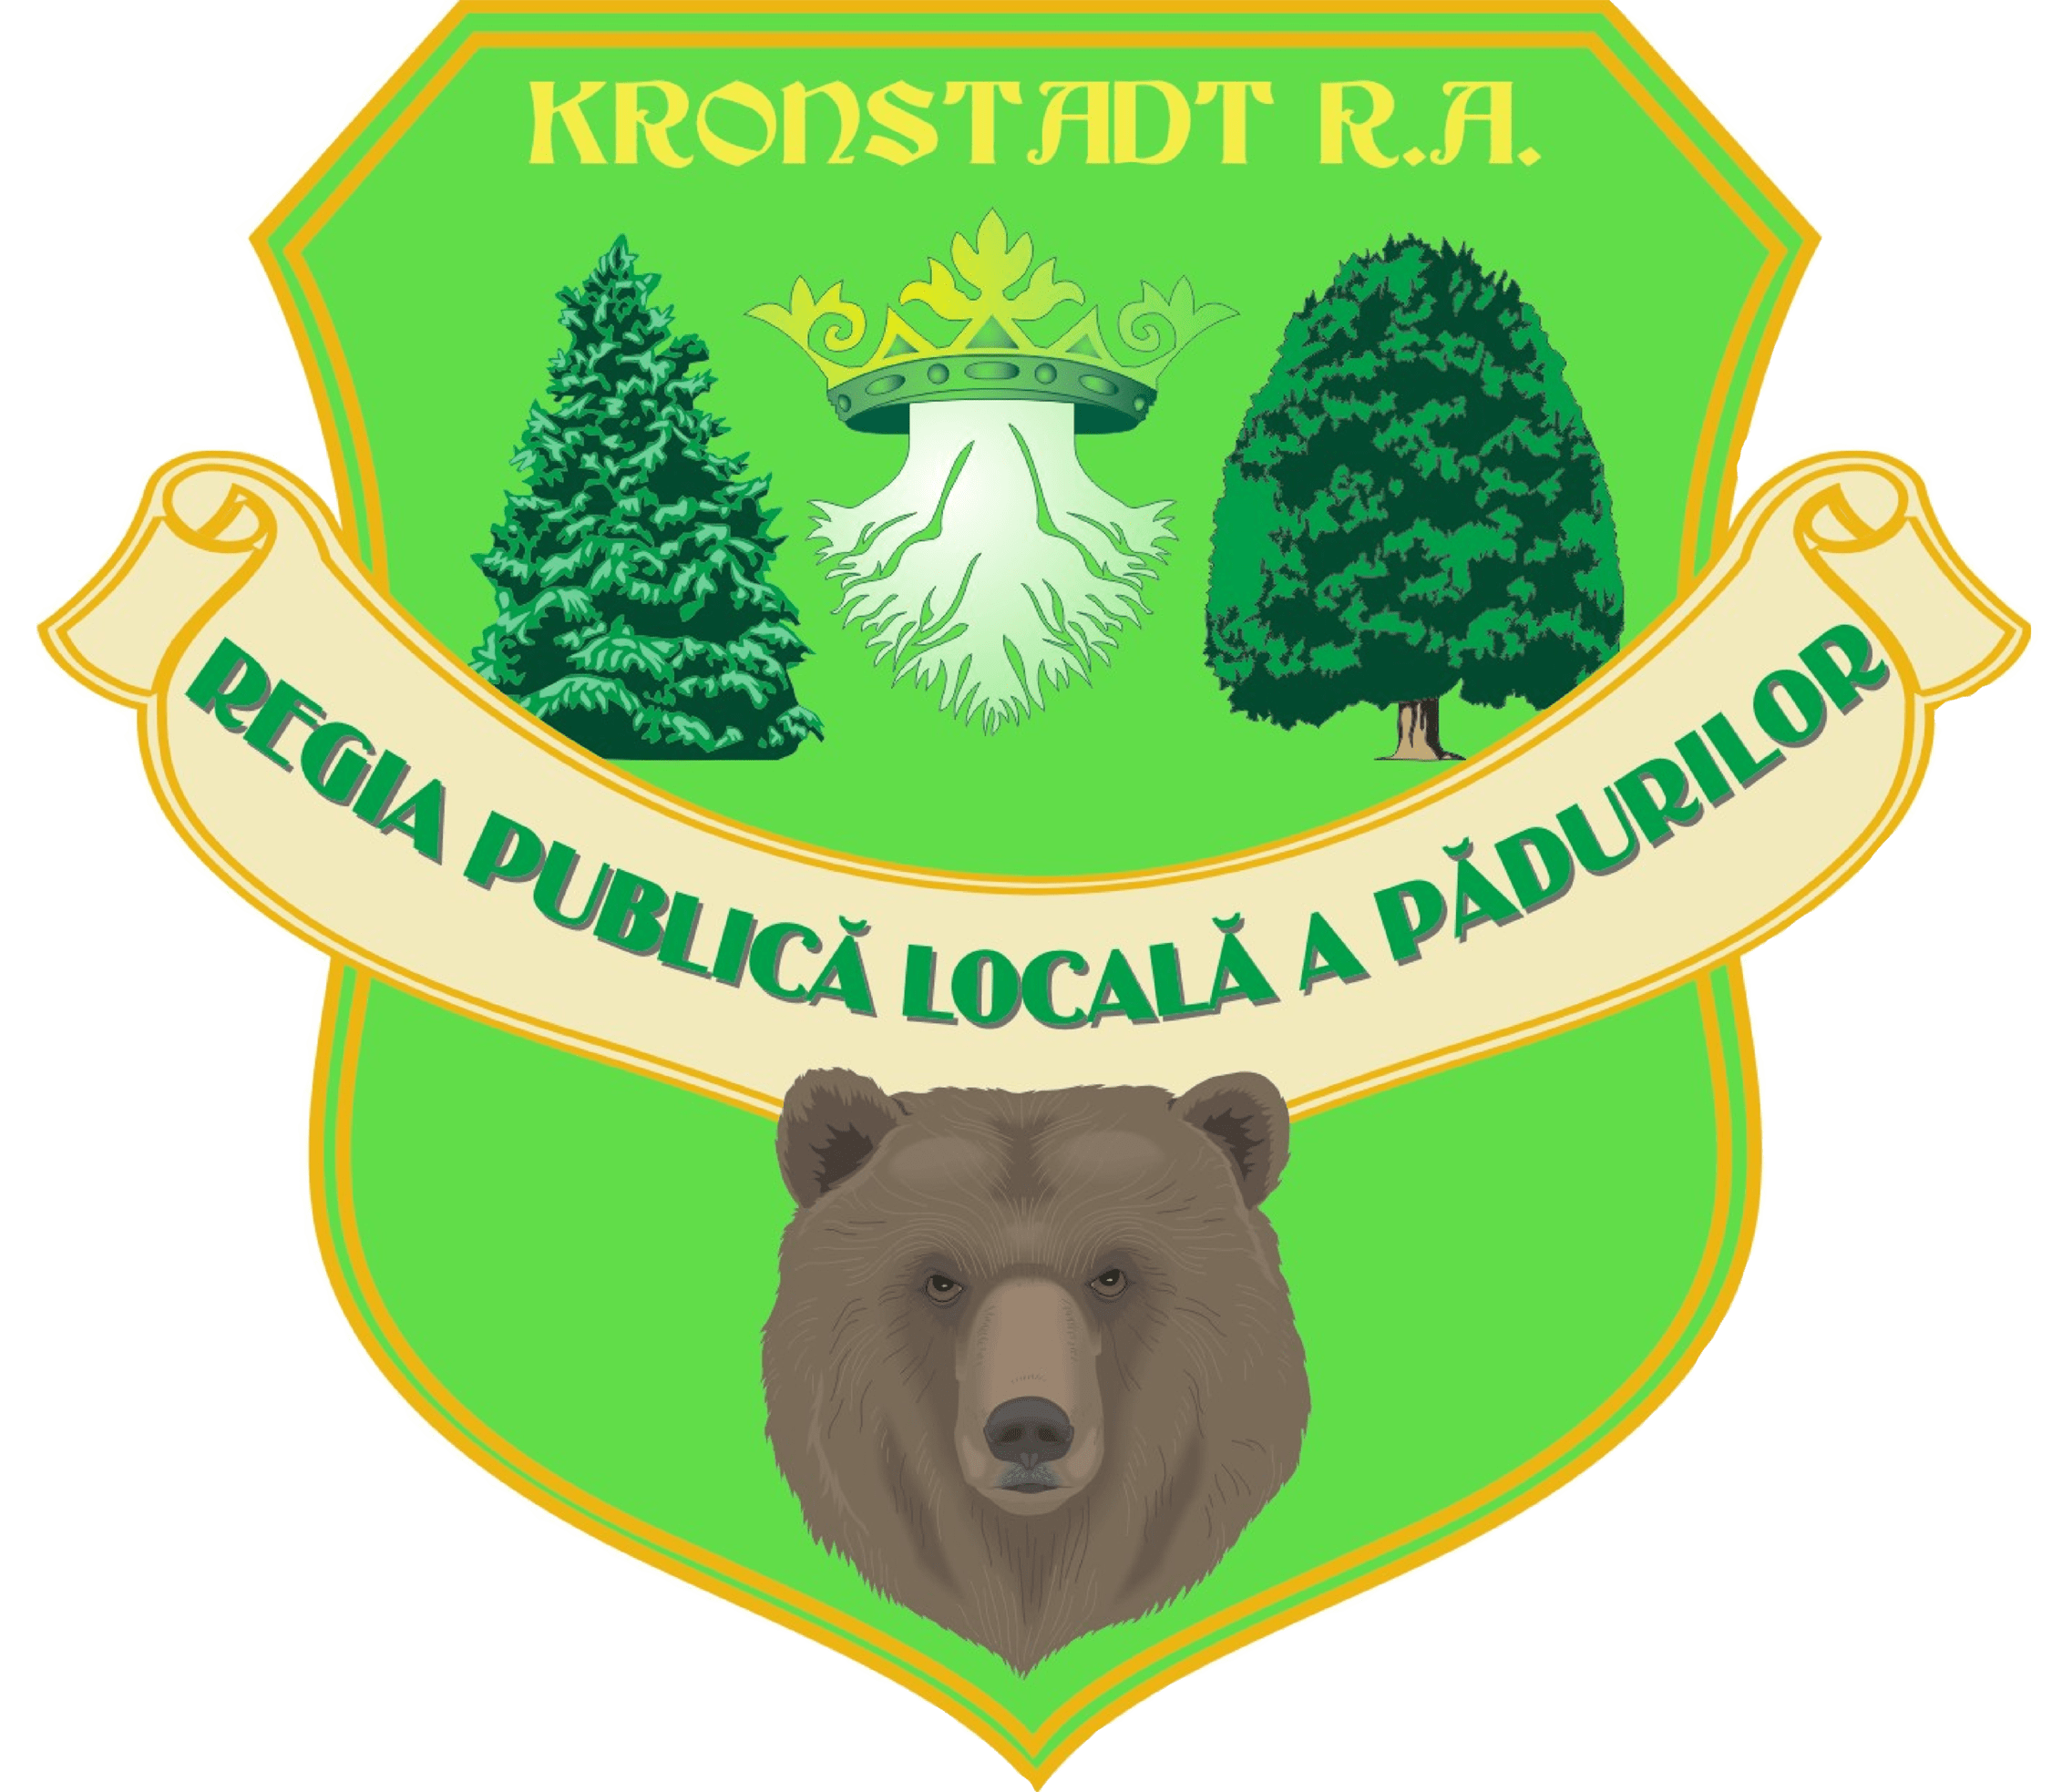 Regia Publica Locala a Padurilor Kronstadt